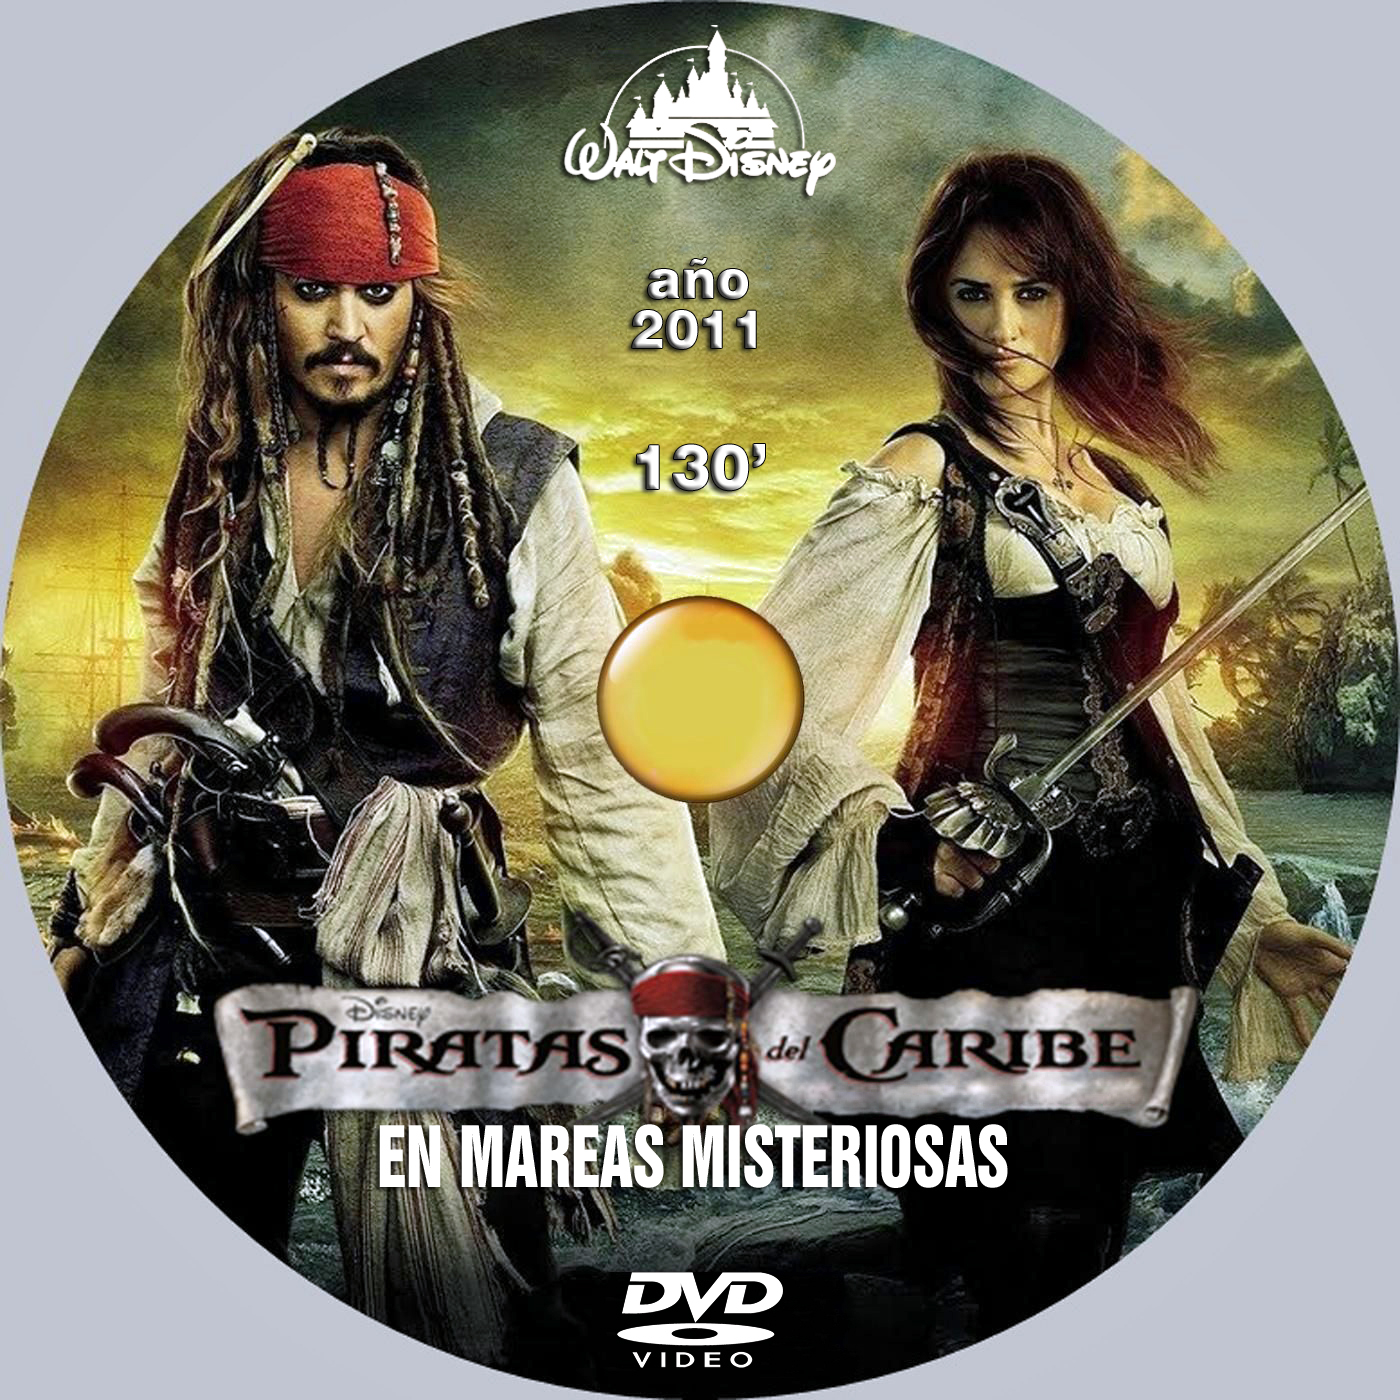  Piratas Del Caribe: En Mareas Misteriosa (Import Movie)  (European Format - Zone 2) (2011) Keith Richards; K : Movies & TV